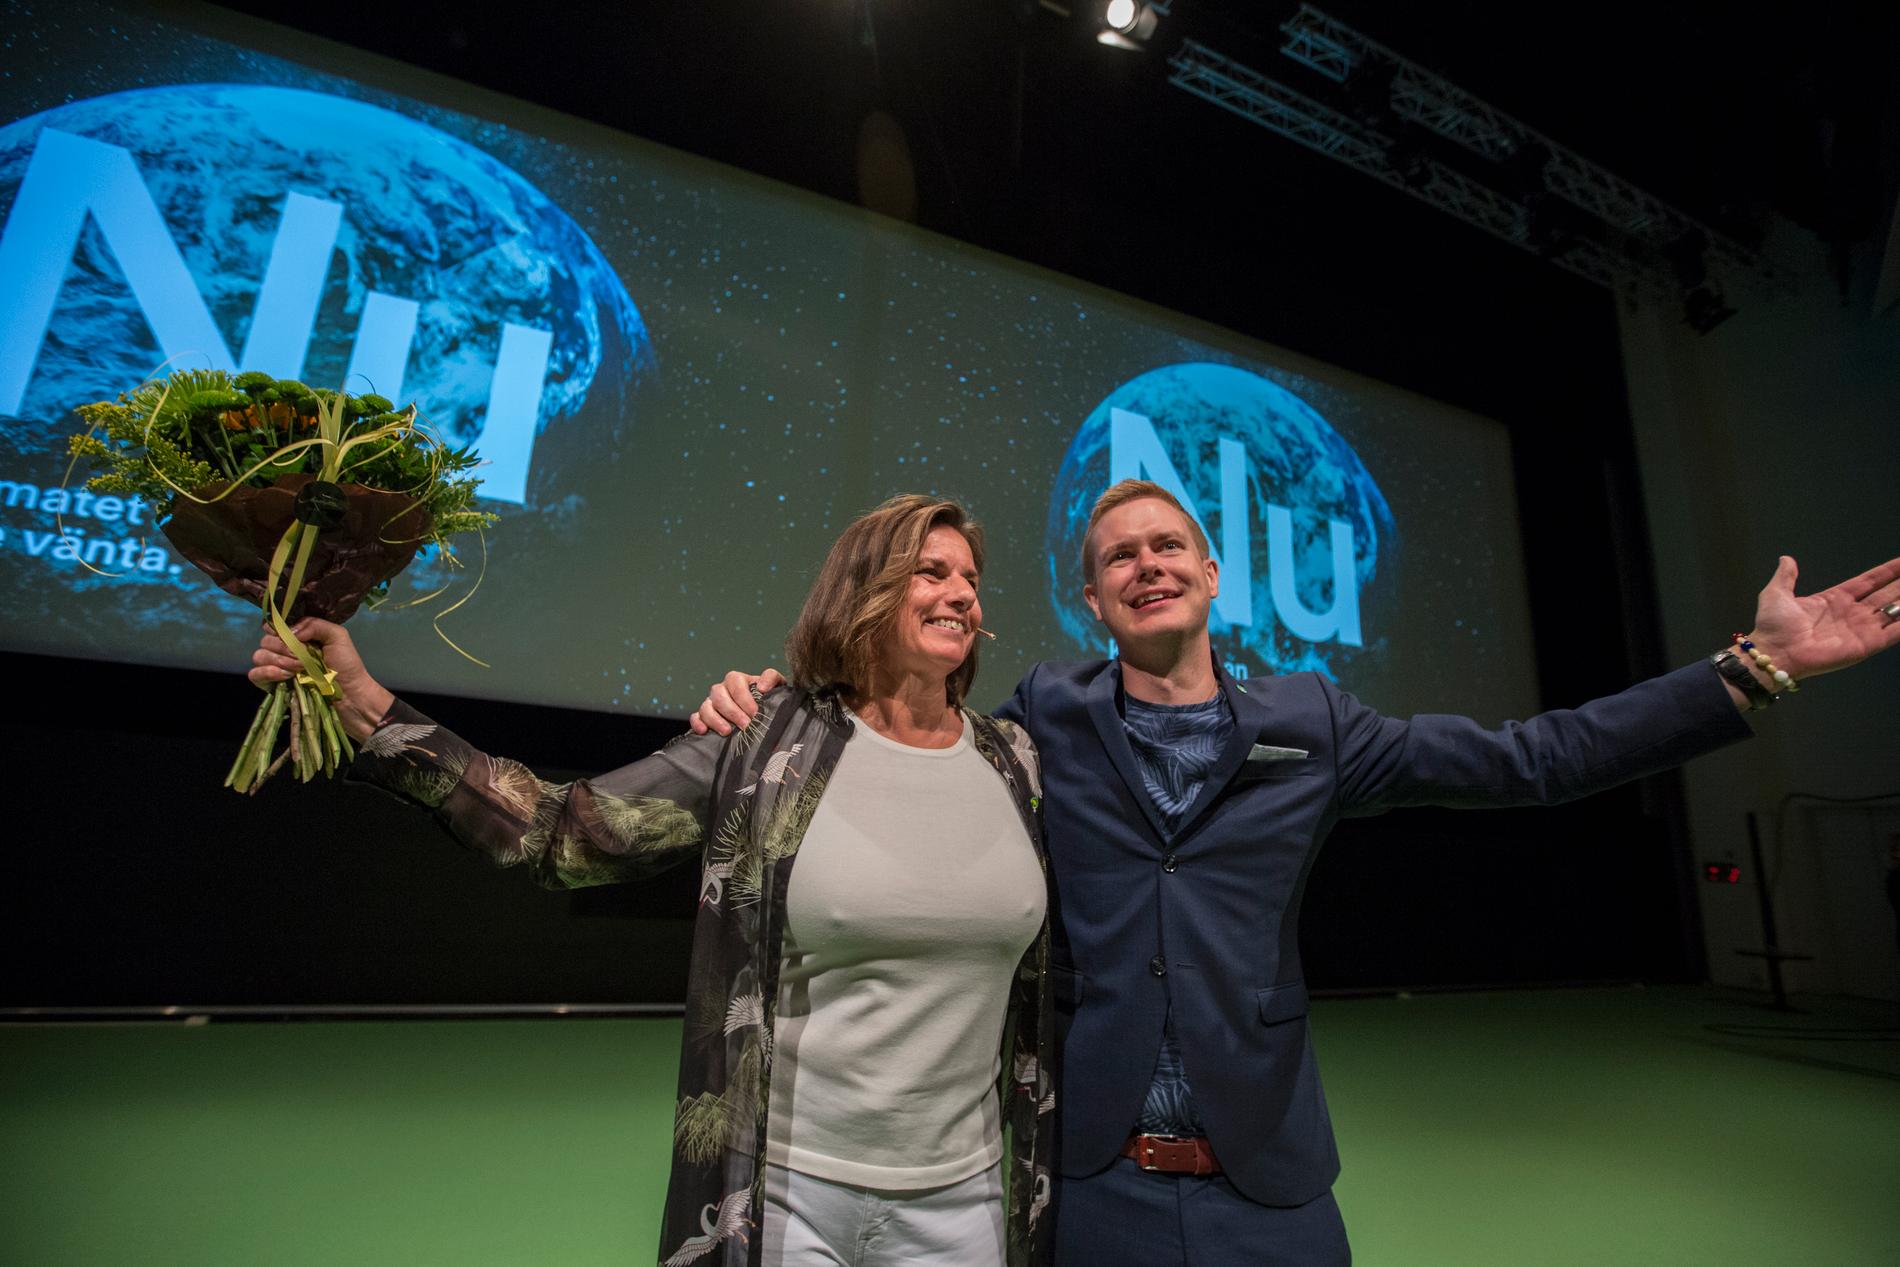 Miljöpartiets språkrör Isabella Lövin blir gratulerad av det andra språkröret Gustav Fridolini samband med sitt tal under partiets kongress på Aros kongresscenter i Västerås.